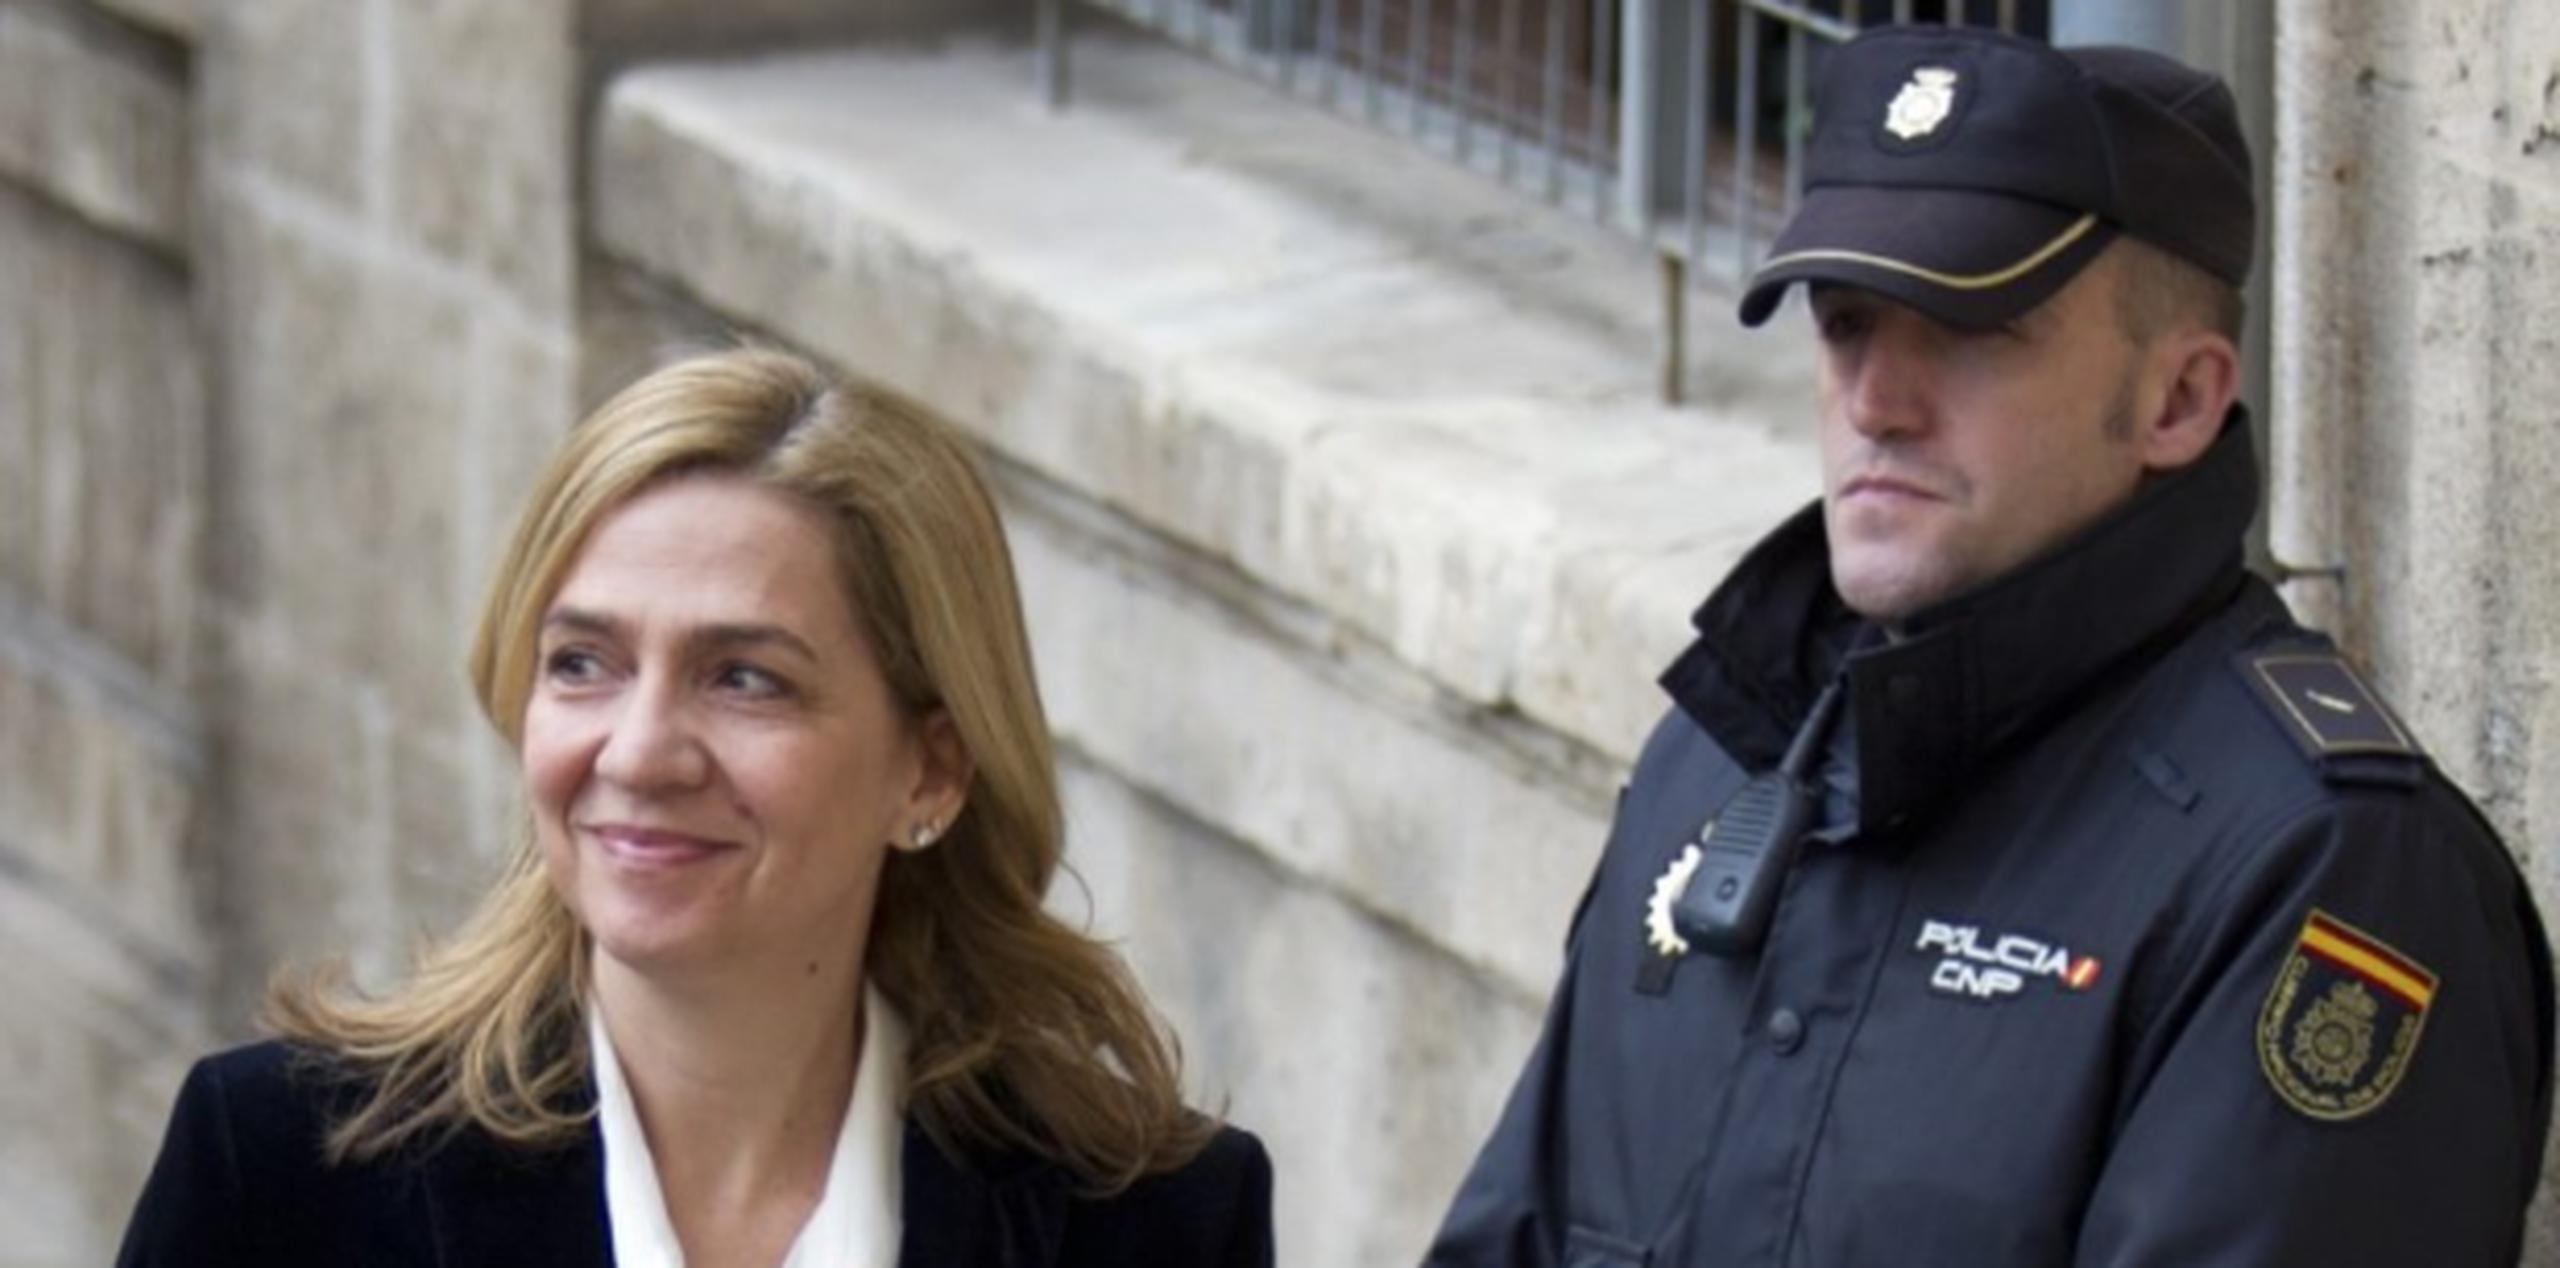 La infanta Cristina, aquí ante un policía a su llegada a un tribunal en Palma de Mallorca, ha reiterado su inocencia. (AFP)